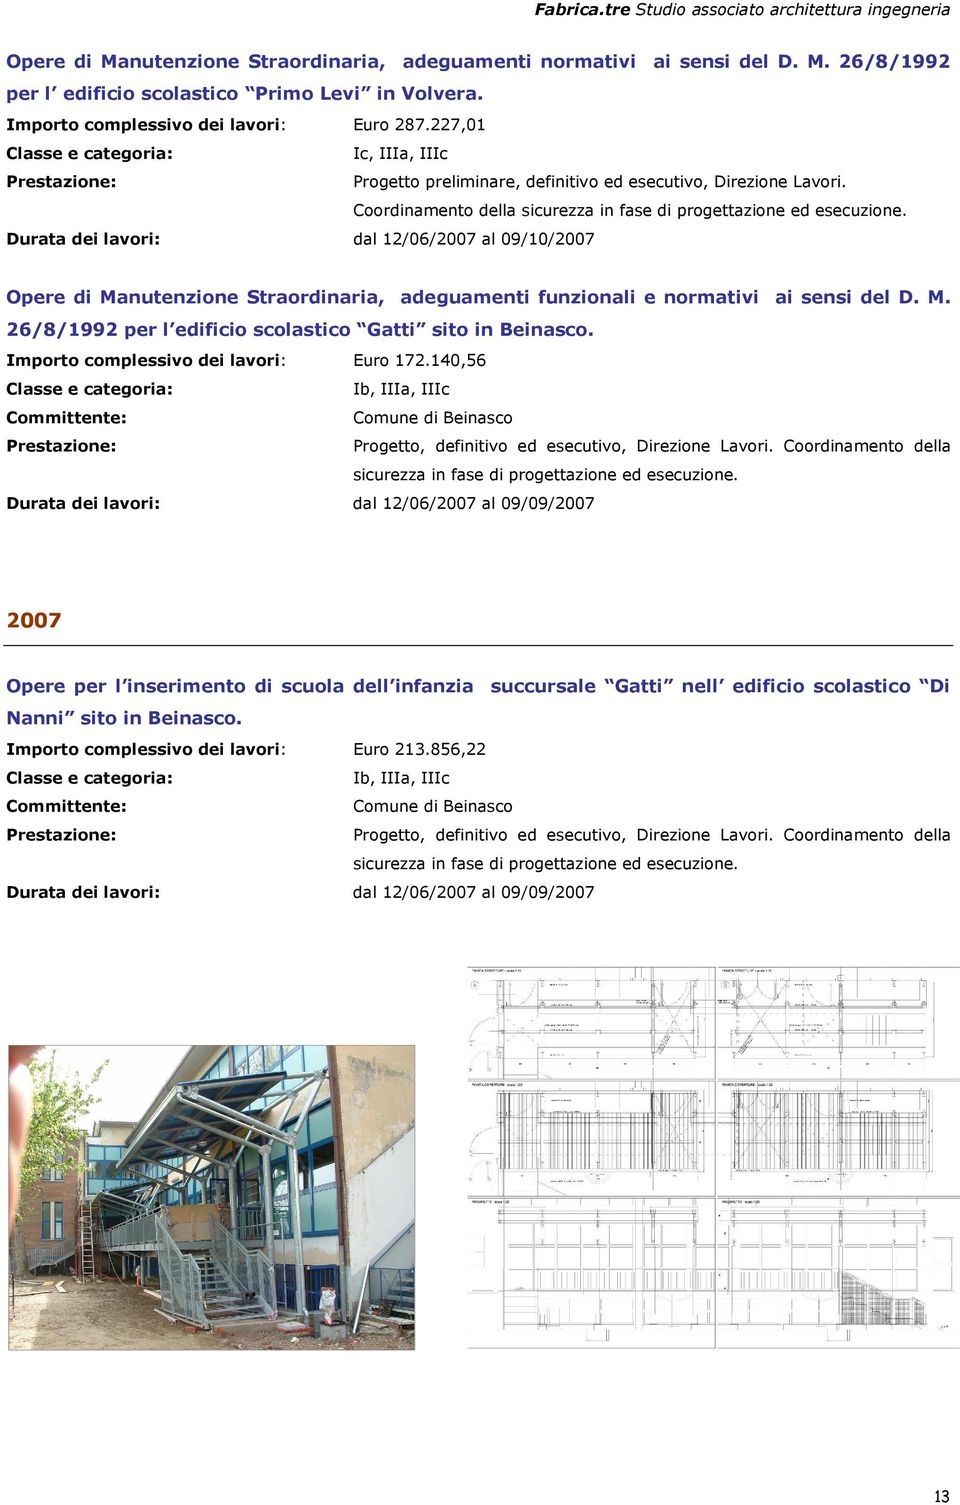 Durata dei lavori: dal 12/06/2007 al 09/10/2007 Opere di Manutenzione Straordinaria, adeguamenti funzionali e normativi ai sensi del D. M. 26/8/1992 per l edificio scolastico Gatti sito in Beinasco.